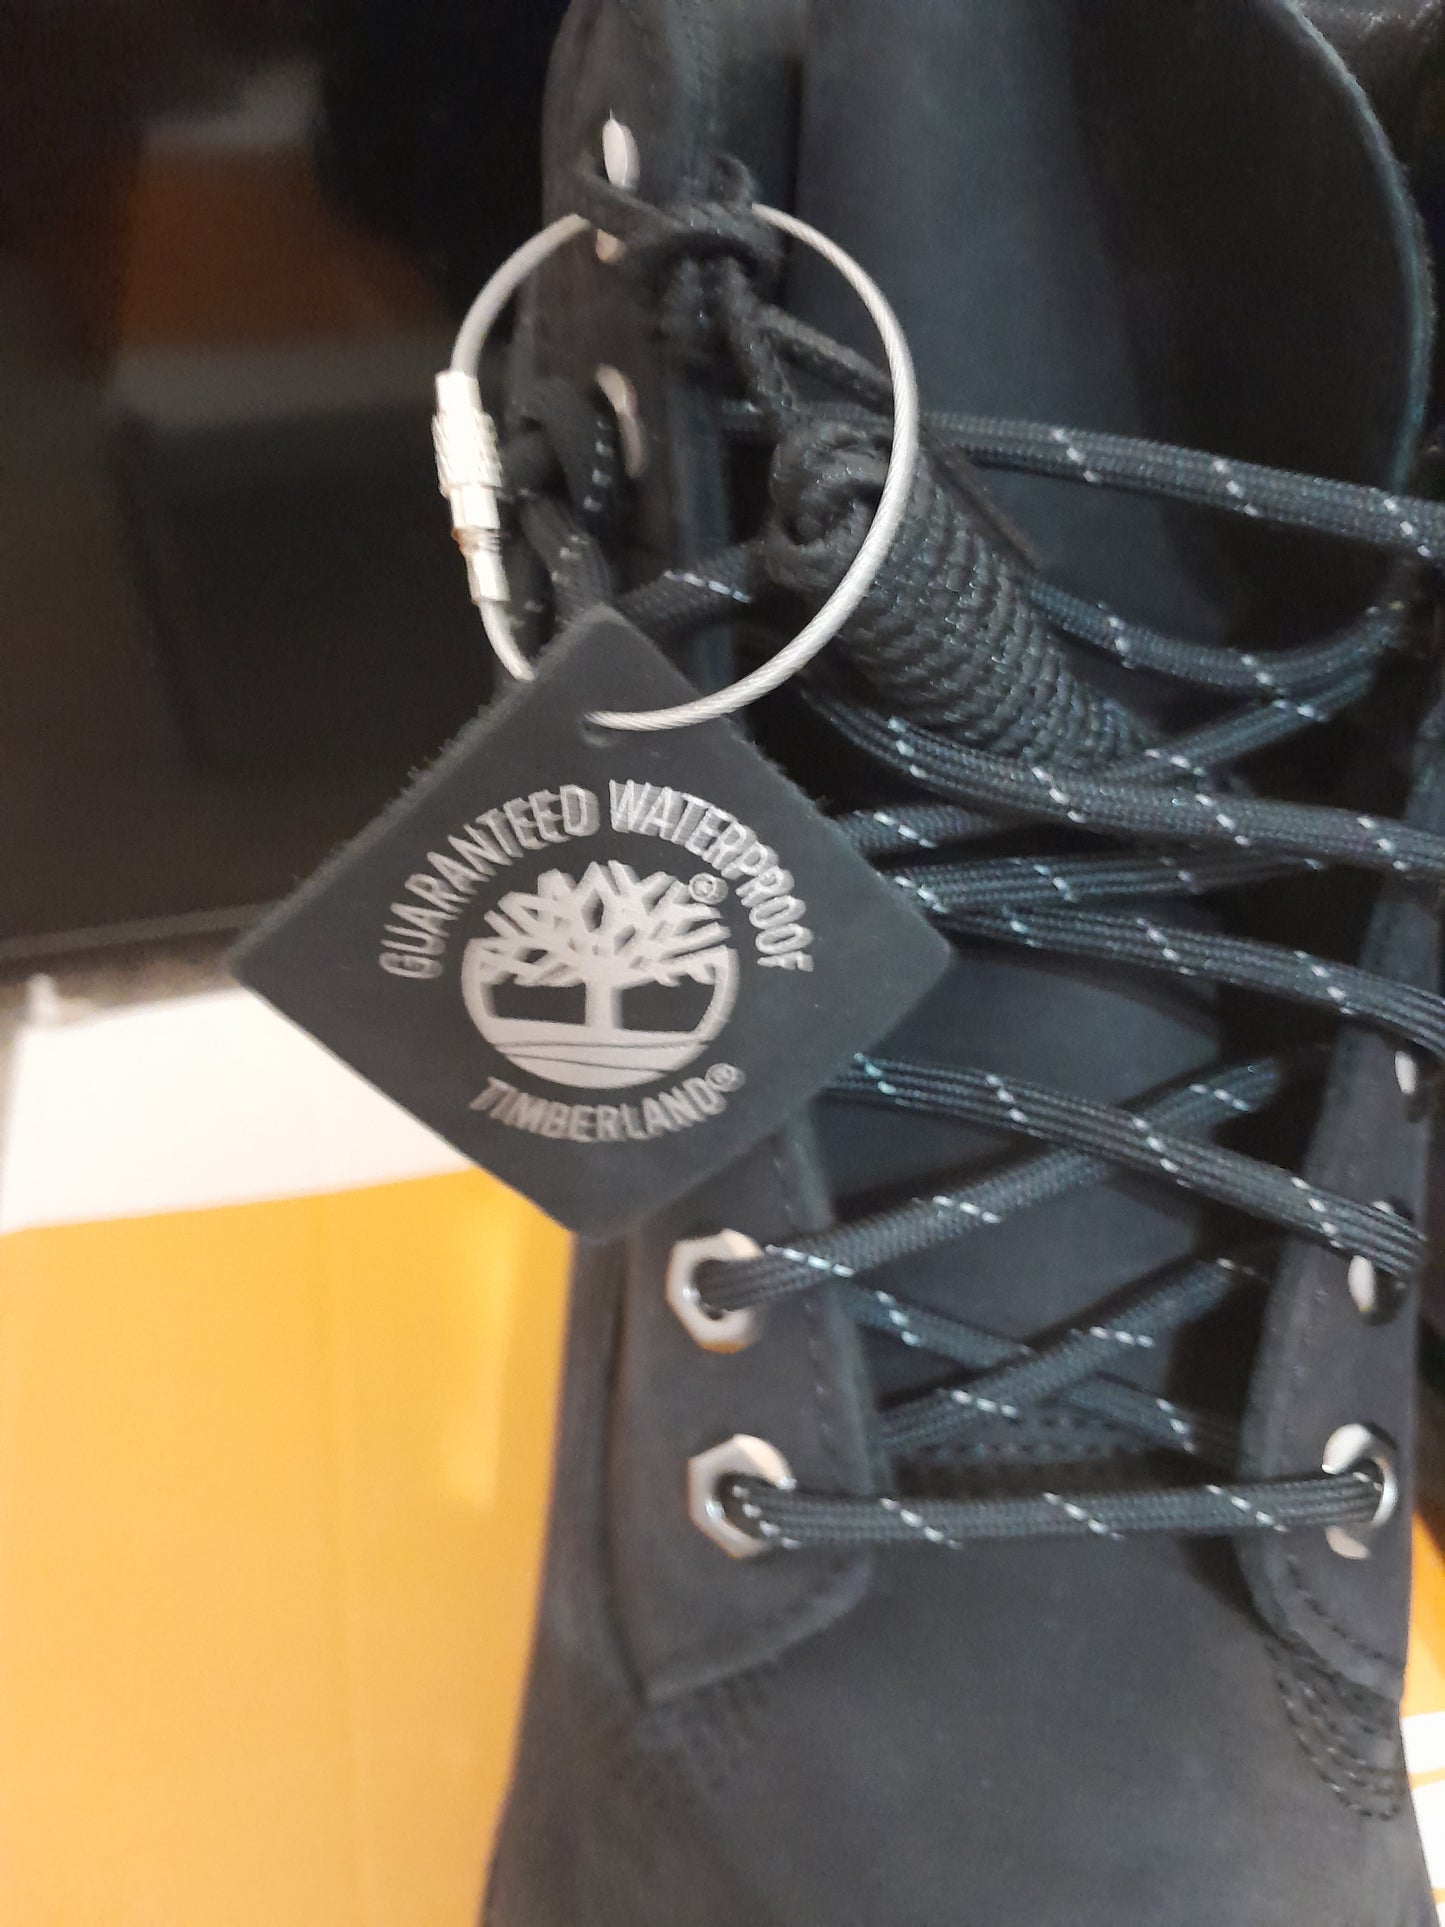 Timberland Premium Waterproof Boot Black Nubuck